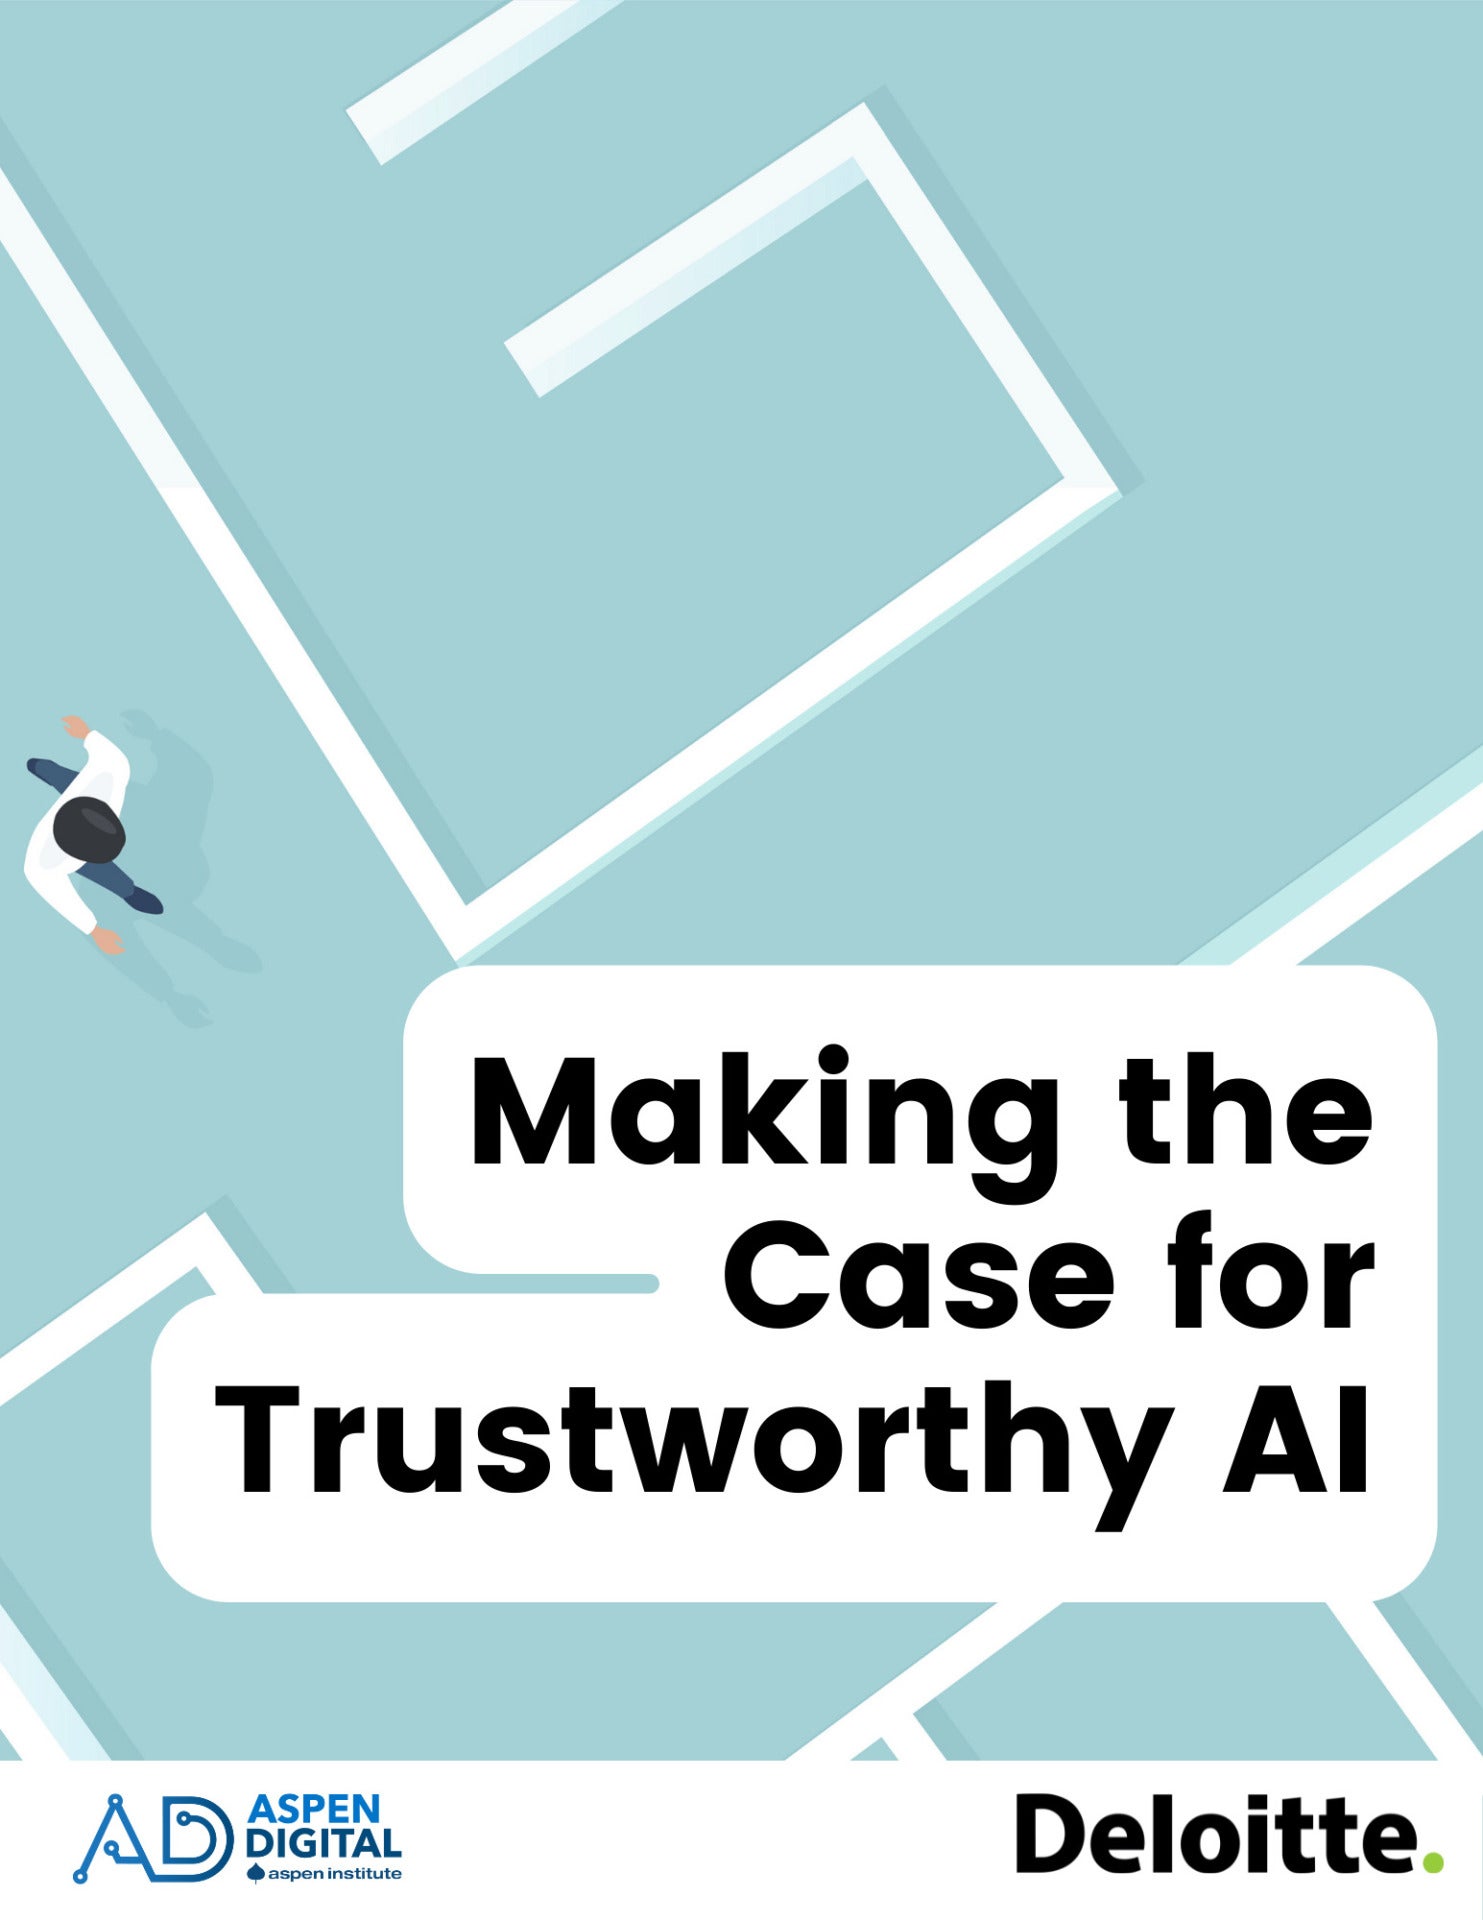 Case for Trustworthy AI